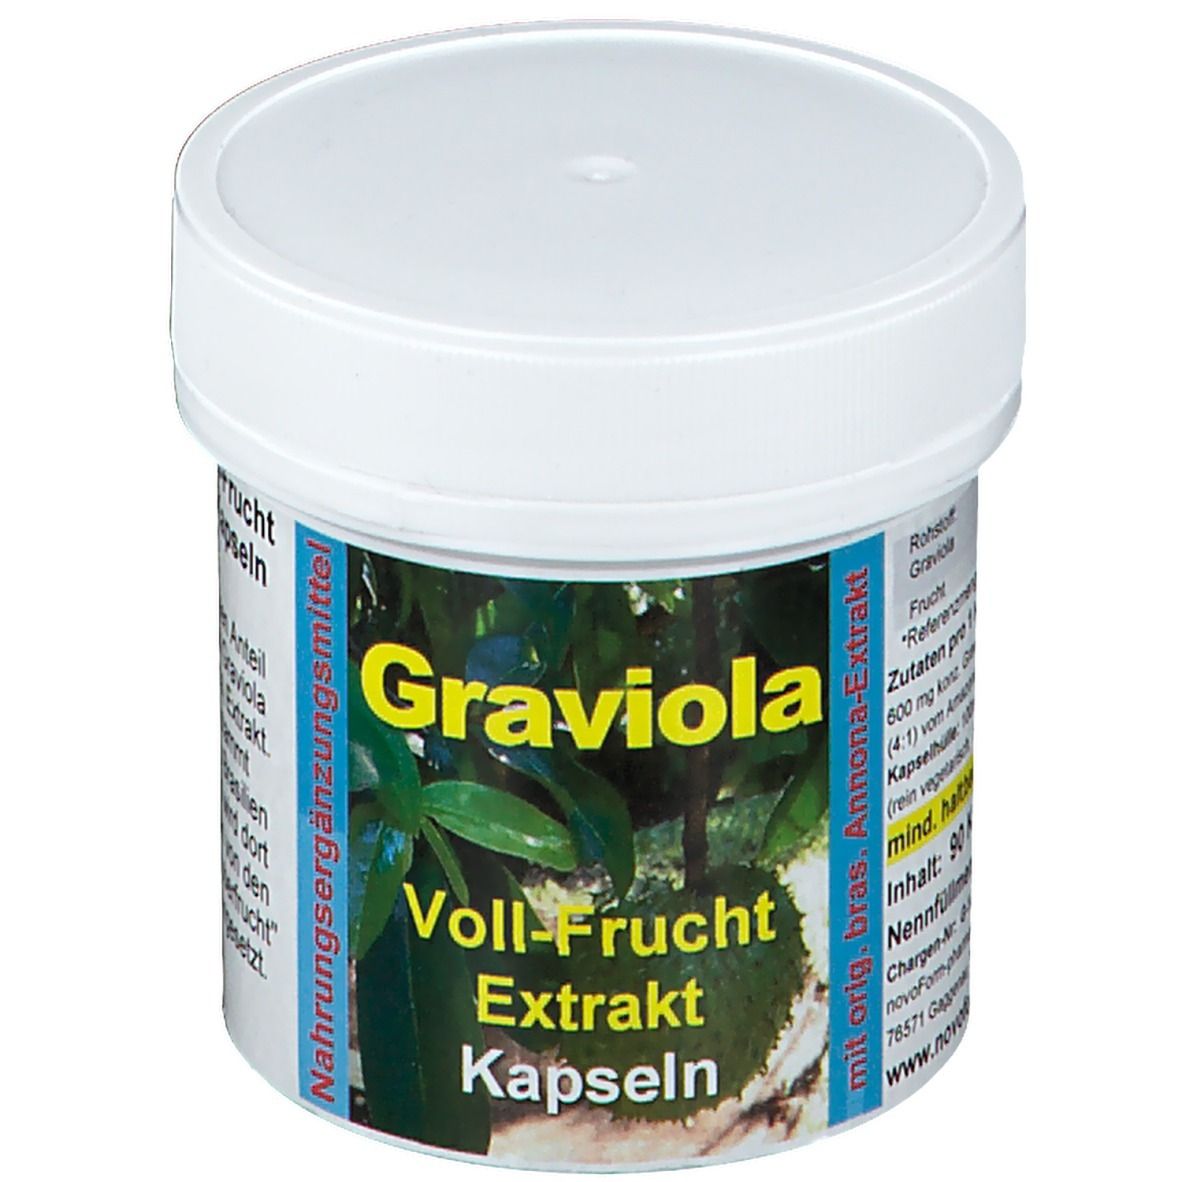 Graviola Voll-Frucht Extrakt 600 mg